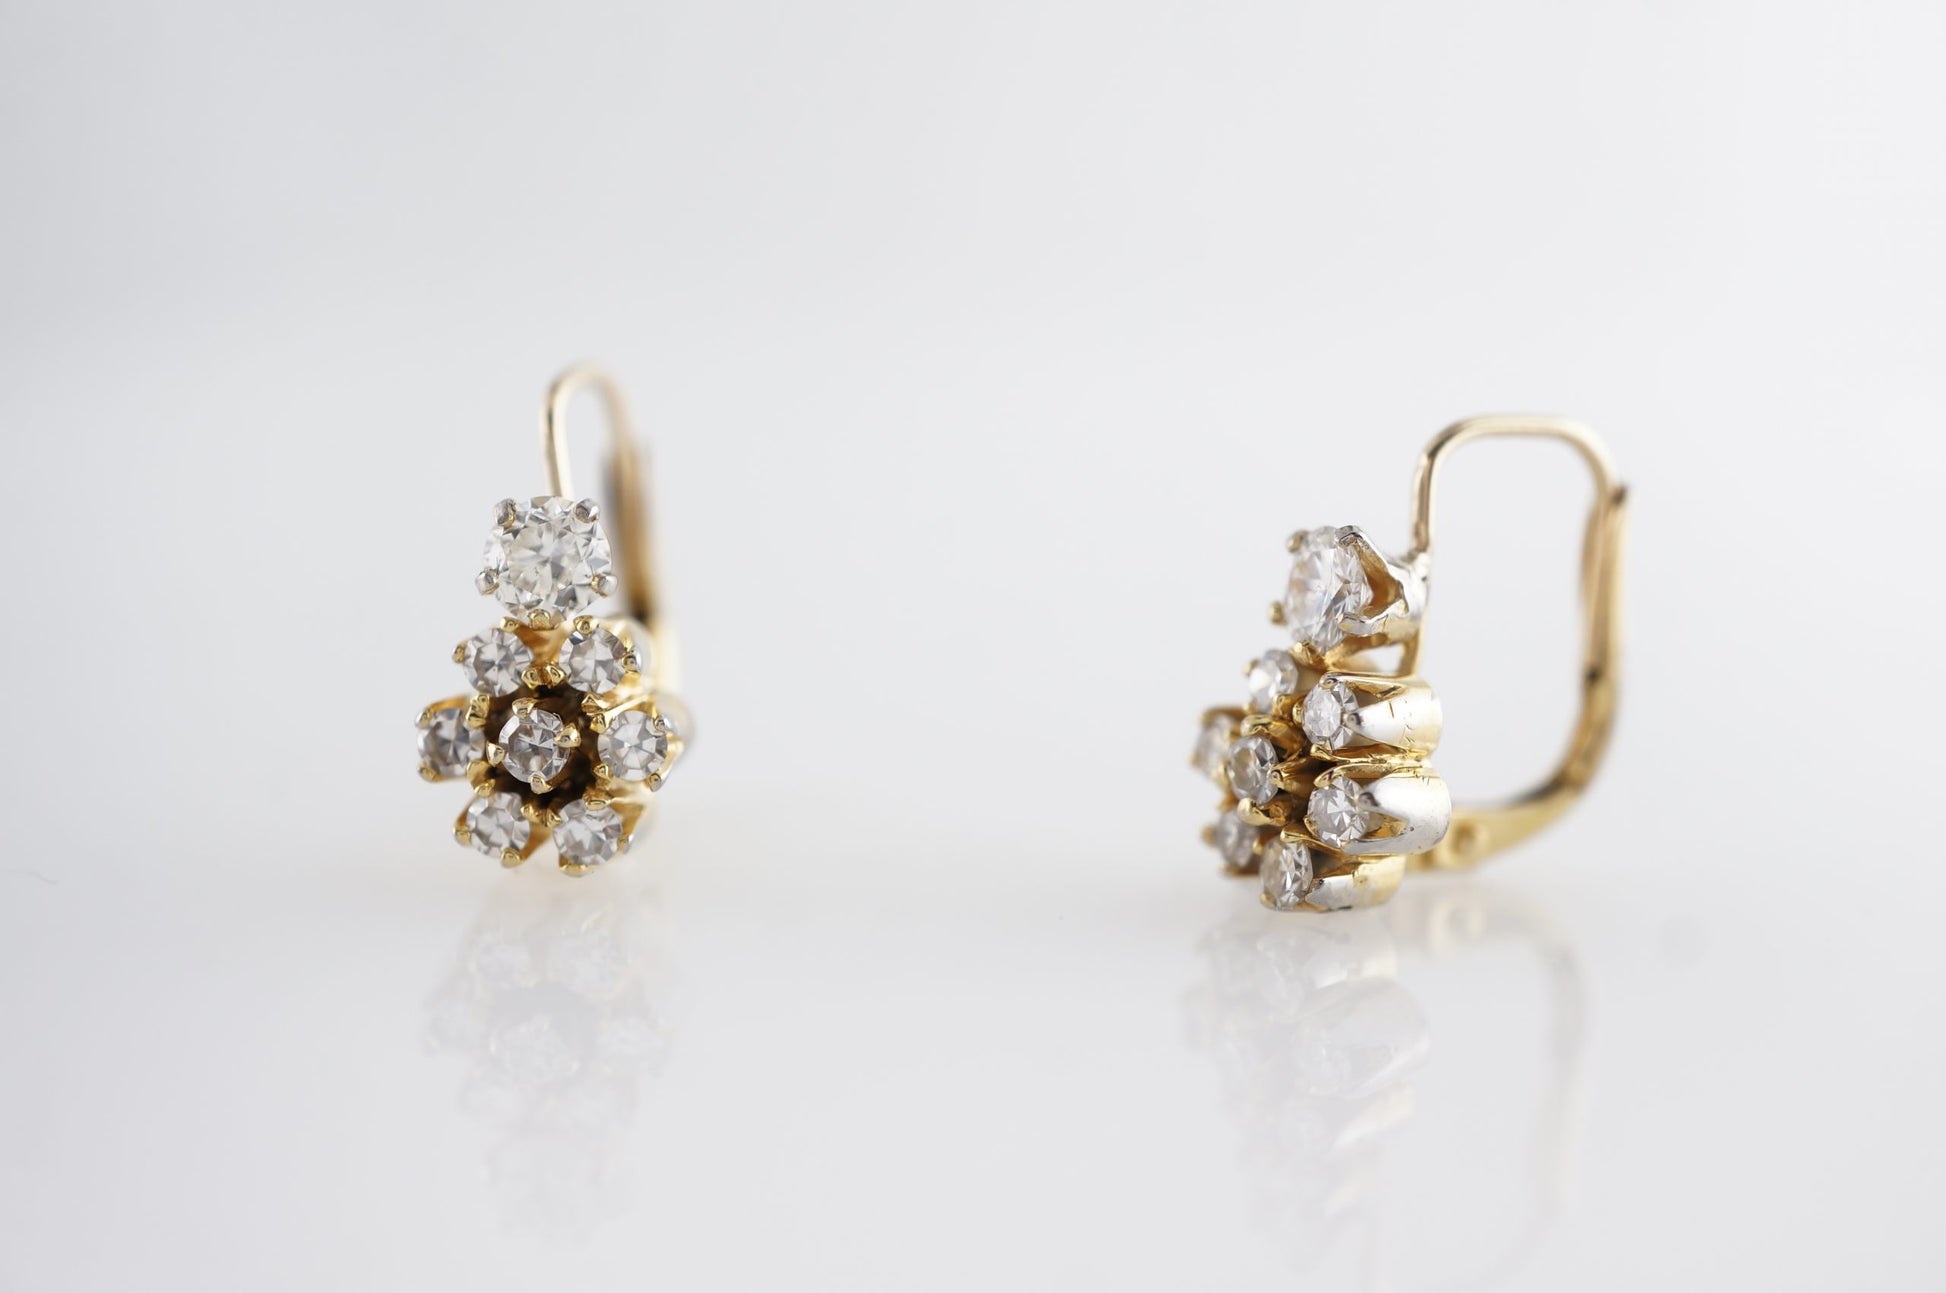 Vintage Diamond Cluster Earrings in 14k White Gold